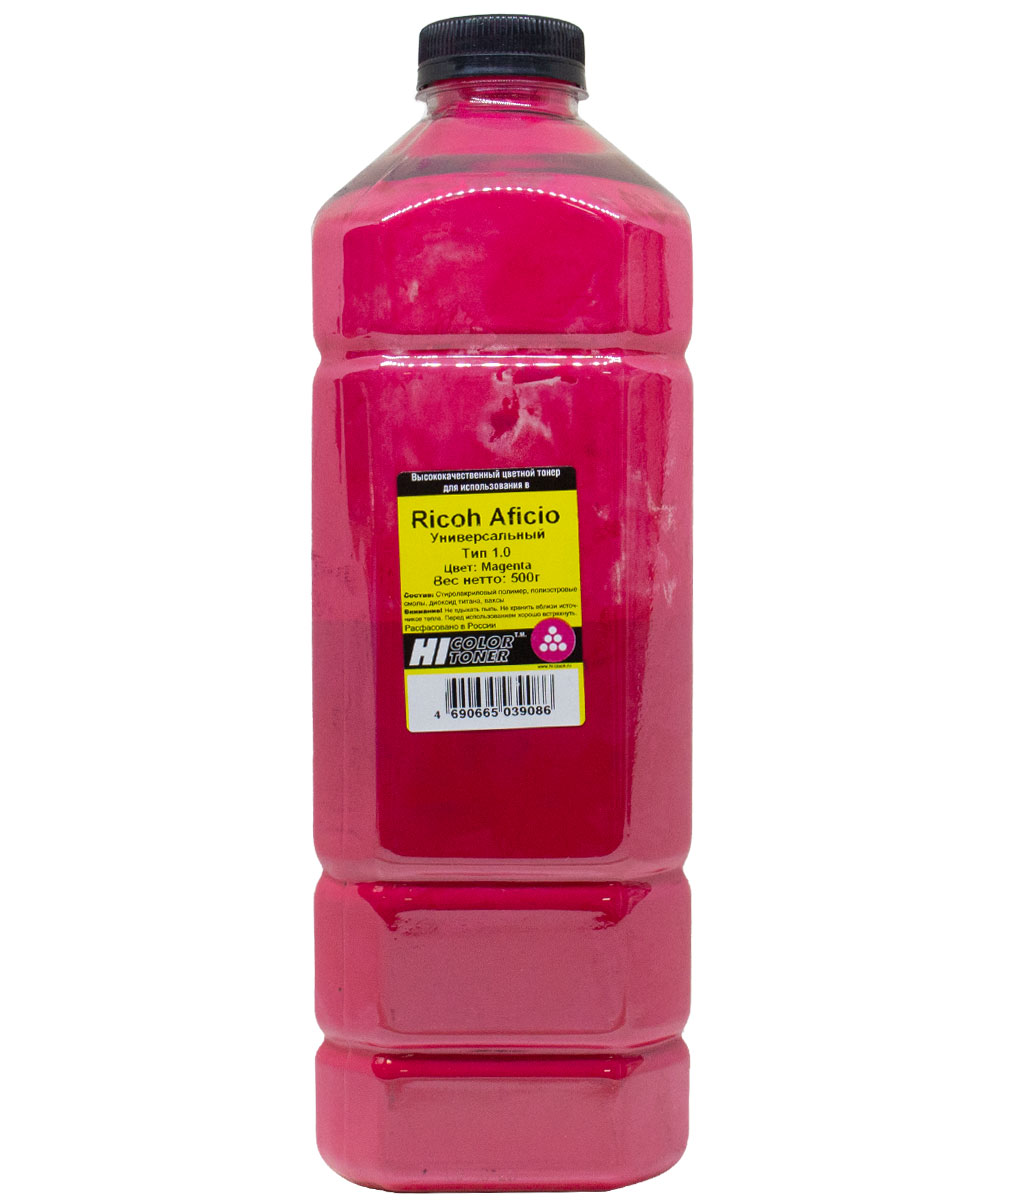 Тонер Hi-Color Тип 1.0, бутыль 500 г, пурпурный, совместимый для Ricoh Aficio SP-C220/221/222/231/232/242/250/261DNw/311/312/320, Ipsio SP-C241/251/310/320/341/342, универсальный (20111821)